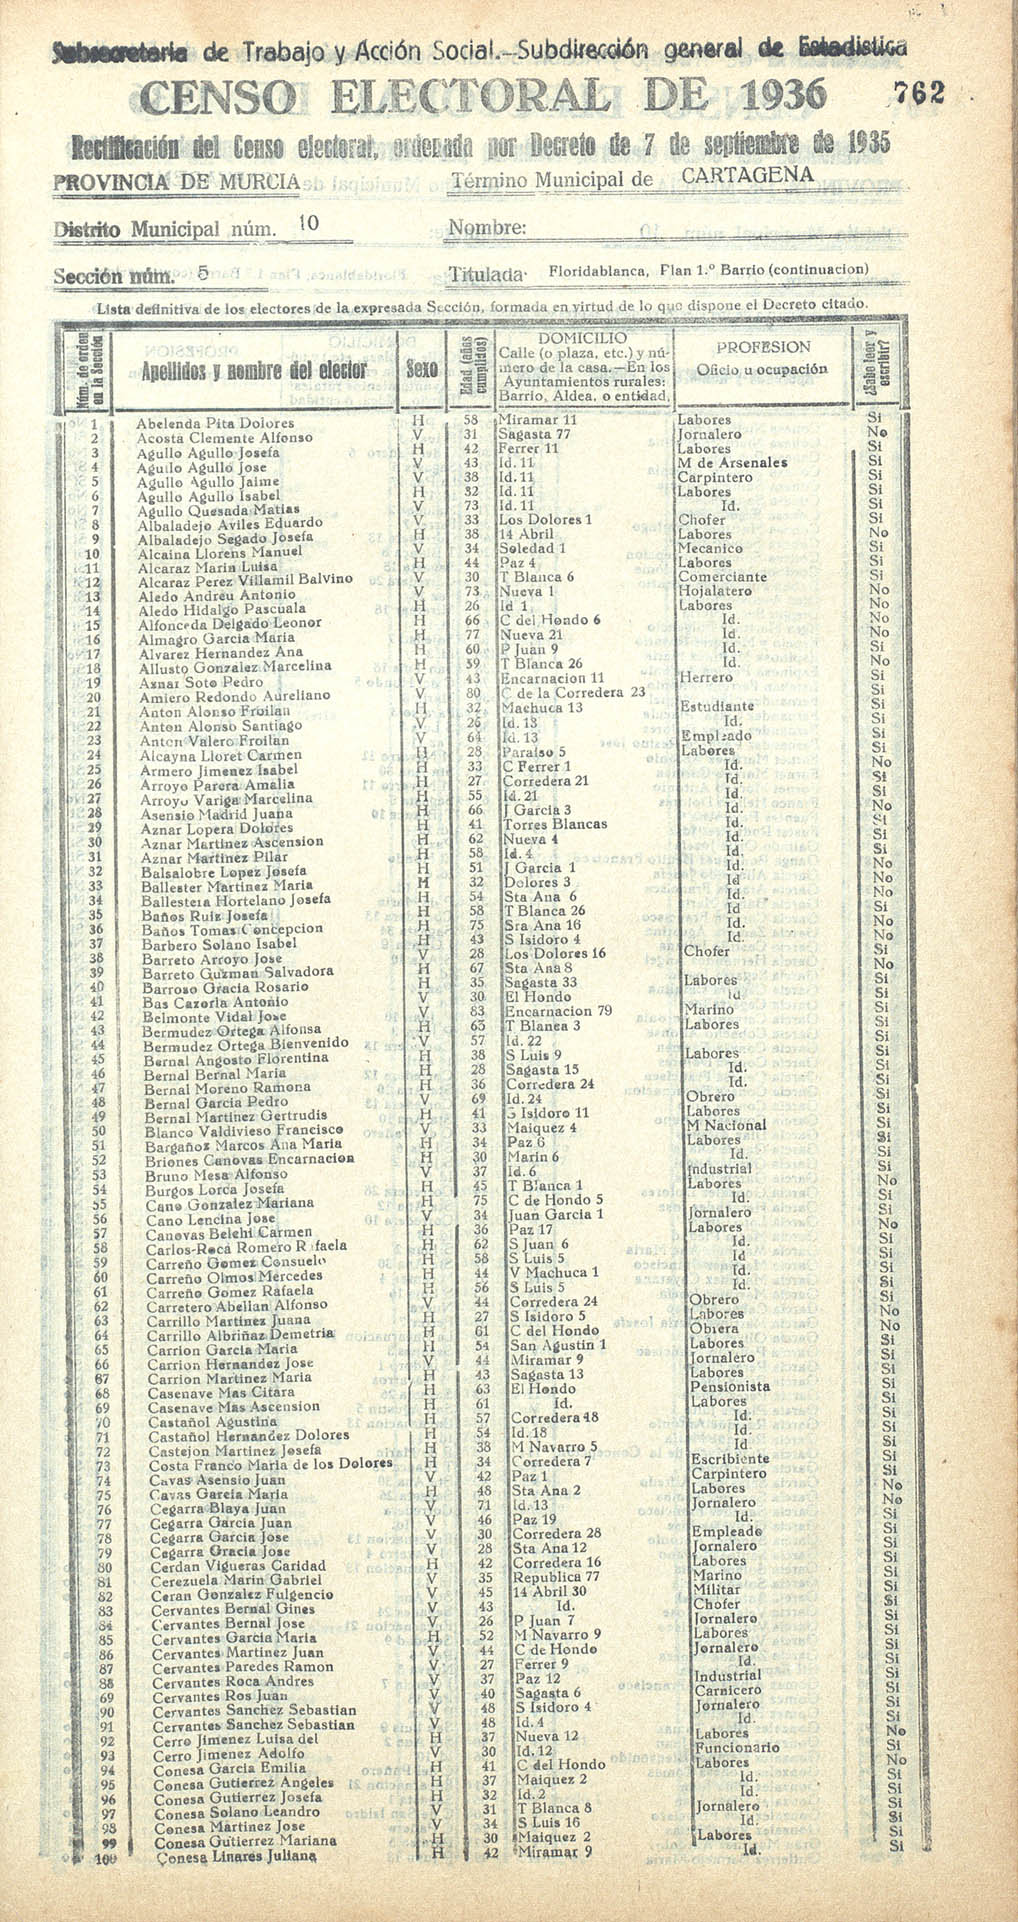 Censo electoral provincial de 1936. Cartagena. Distrito 10º. Sección 5ª, Floridablanca y Plan 1º barrio (continuación)